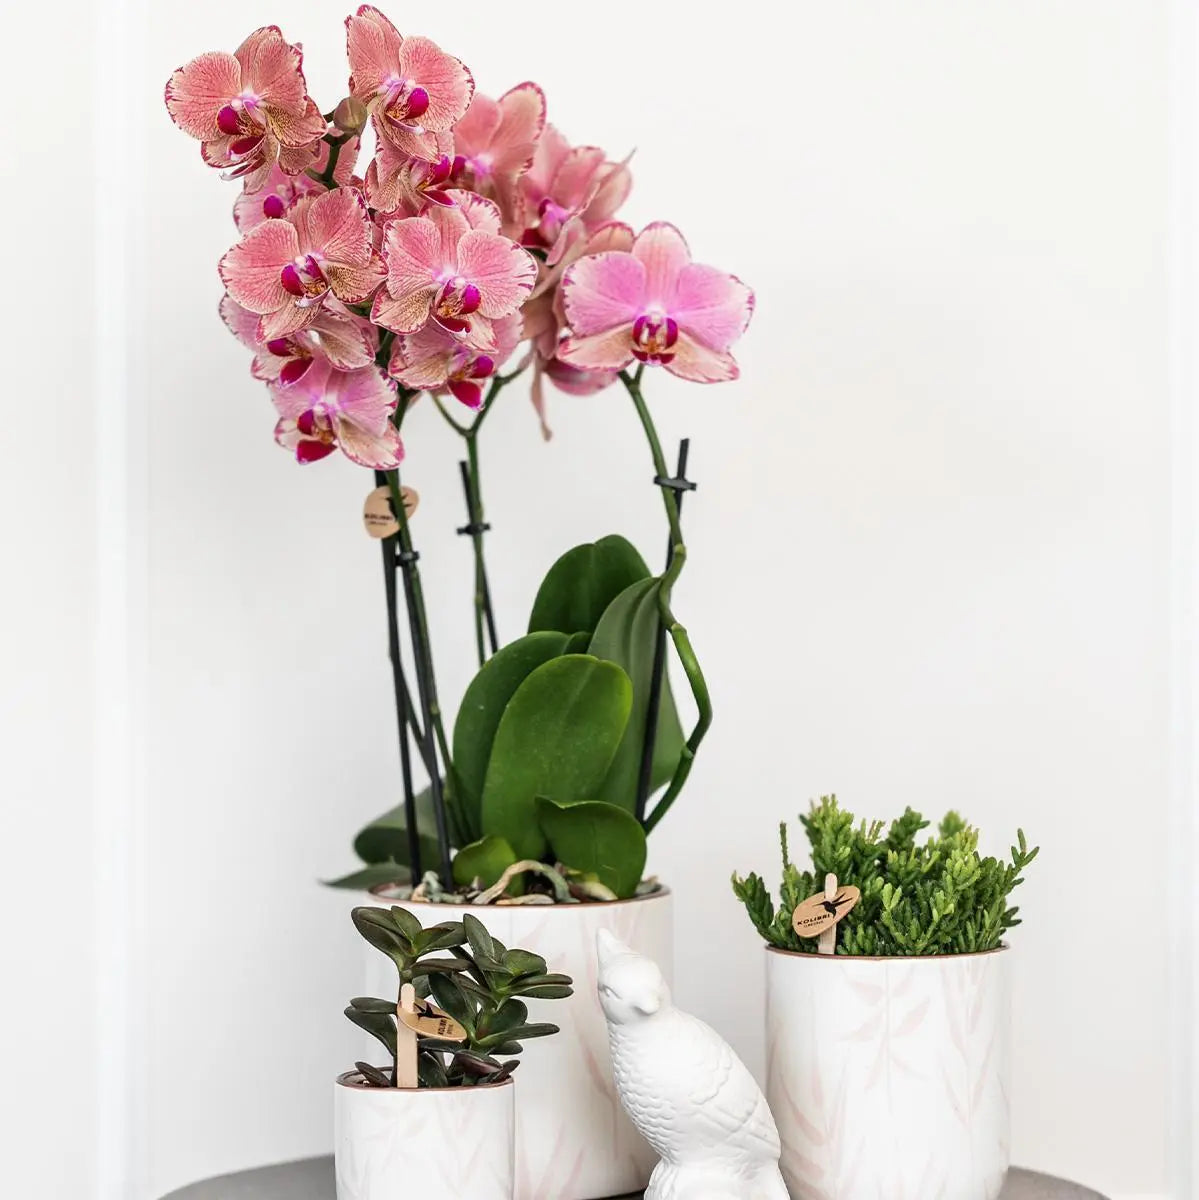 Kolibri Home | Leaf pot pink - Ø6cm Everspring